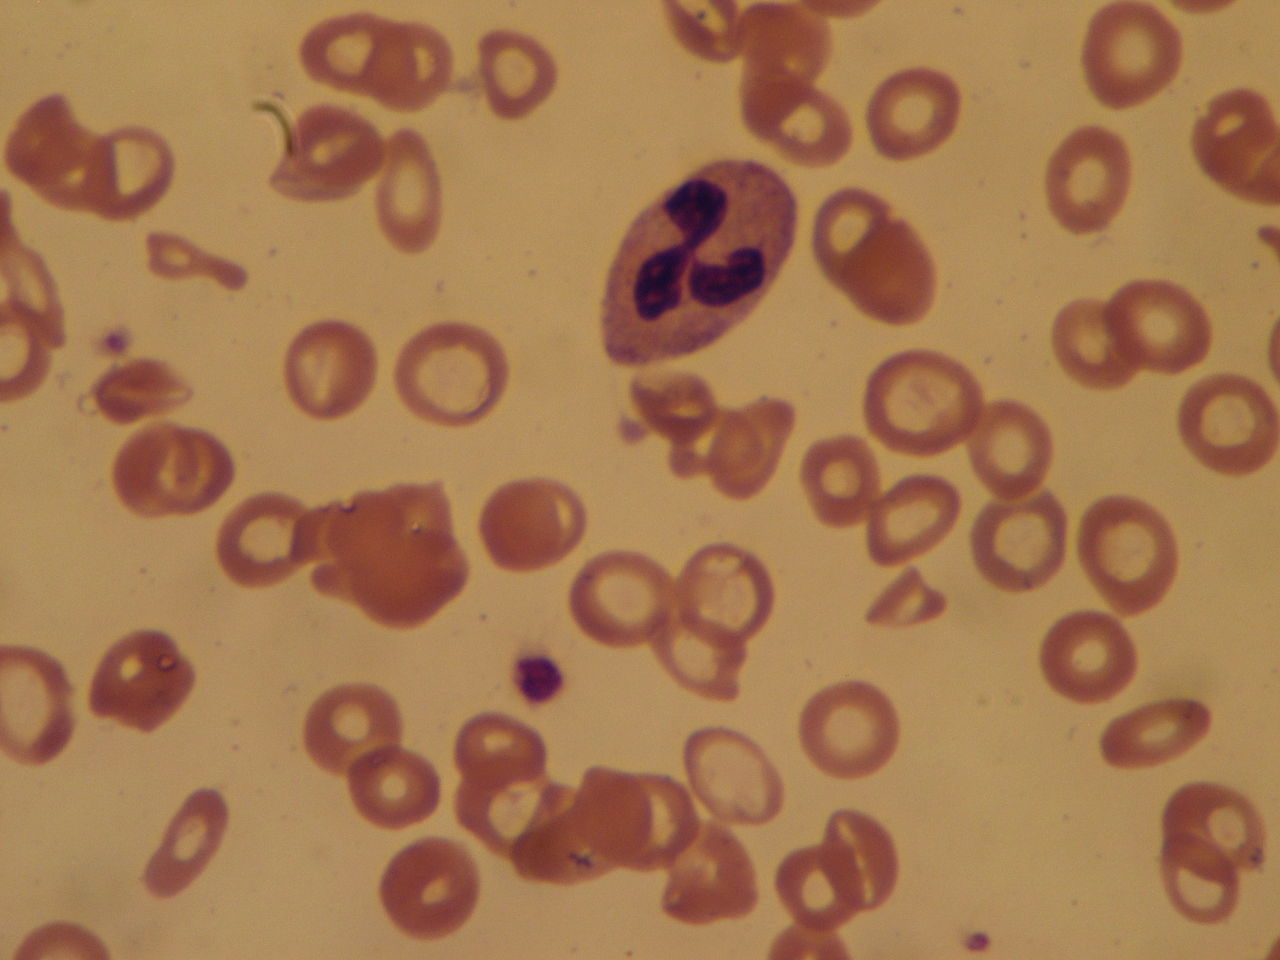 Bloedarmoede: afname van het aantal rode bloedcellen